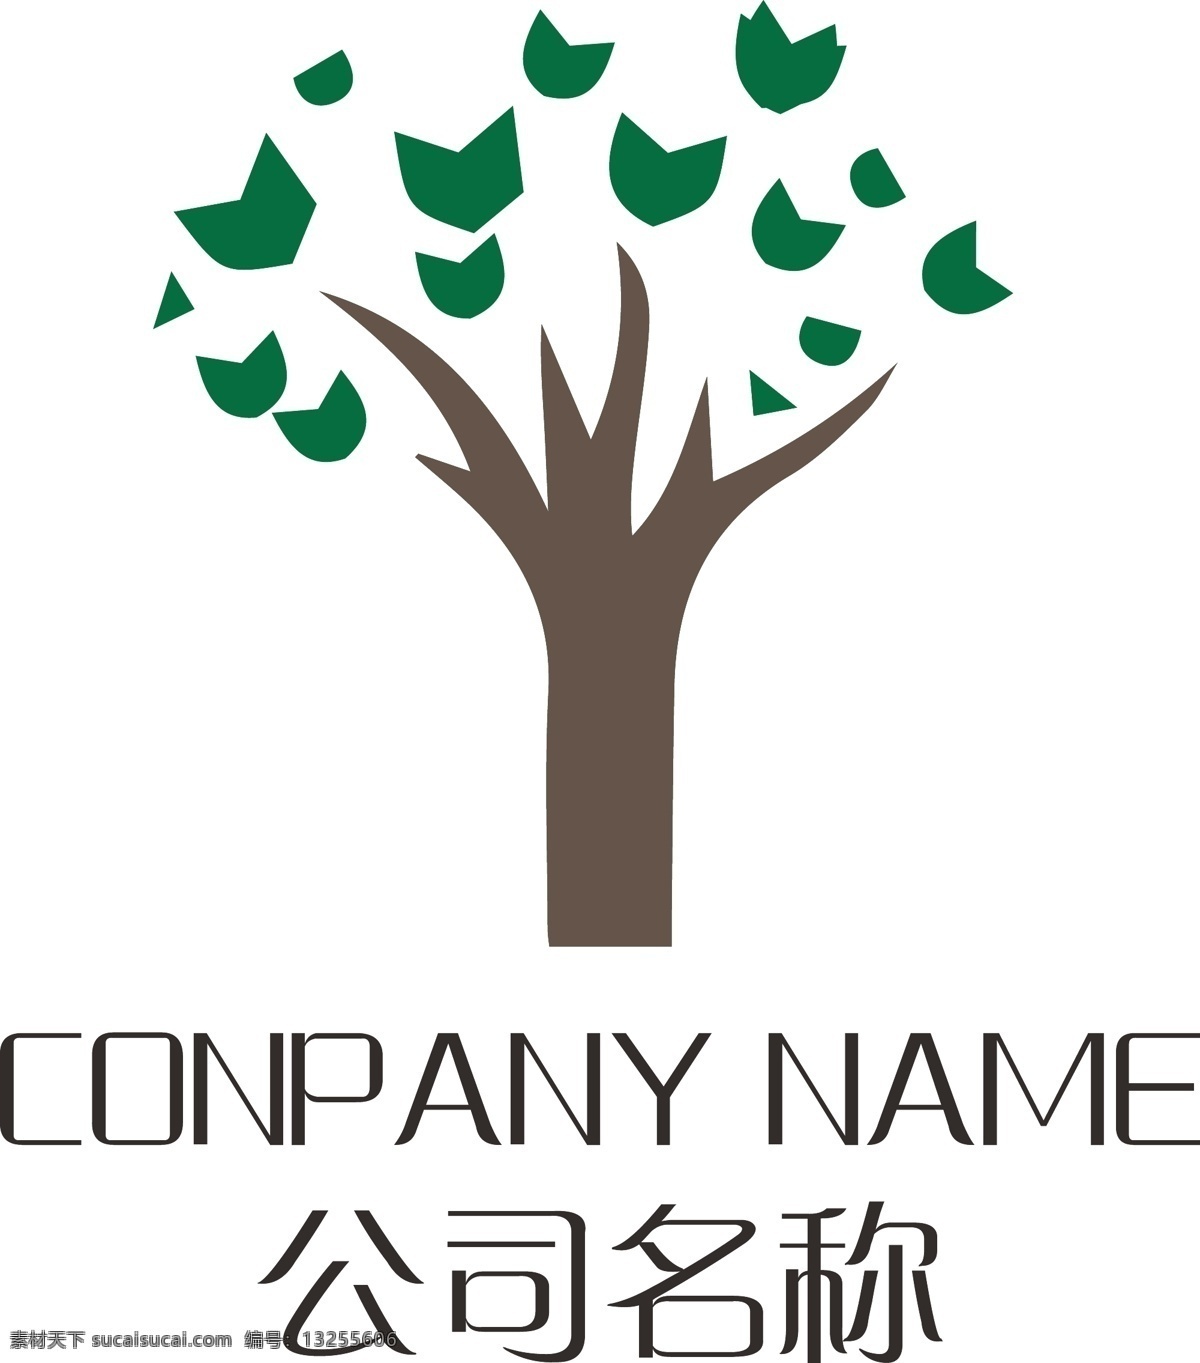 公司 logo 标志设计 金融logo 保险logo 理财logo 税务logo 货币logo 银行logo 企业logo 信用 经济logo